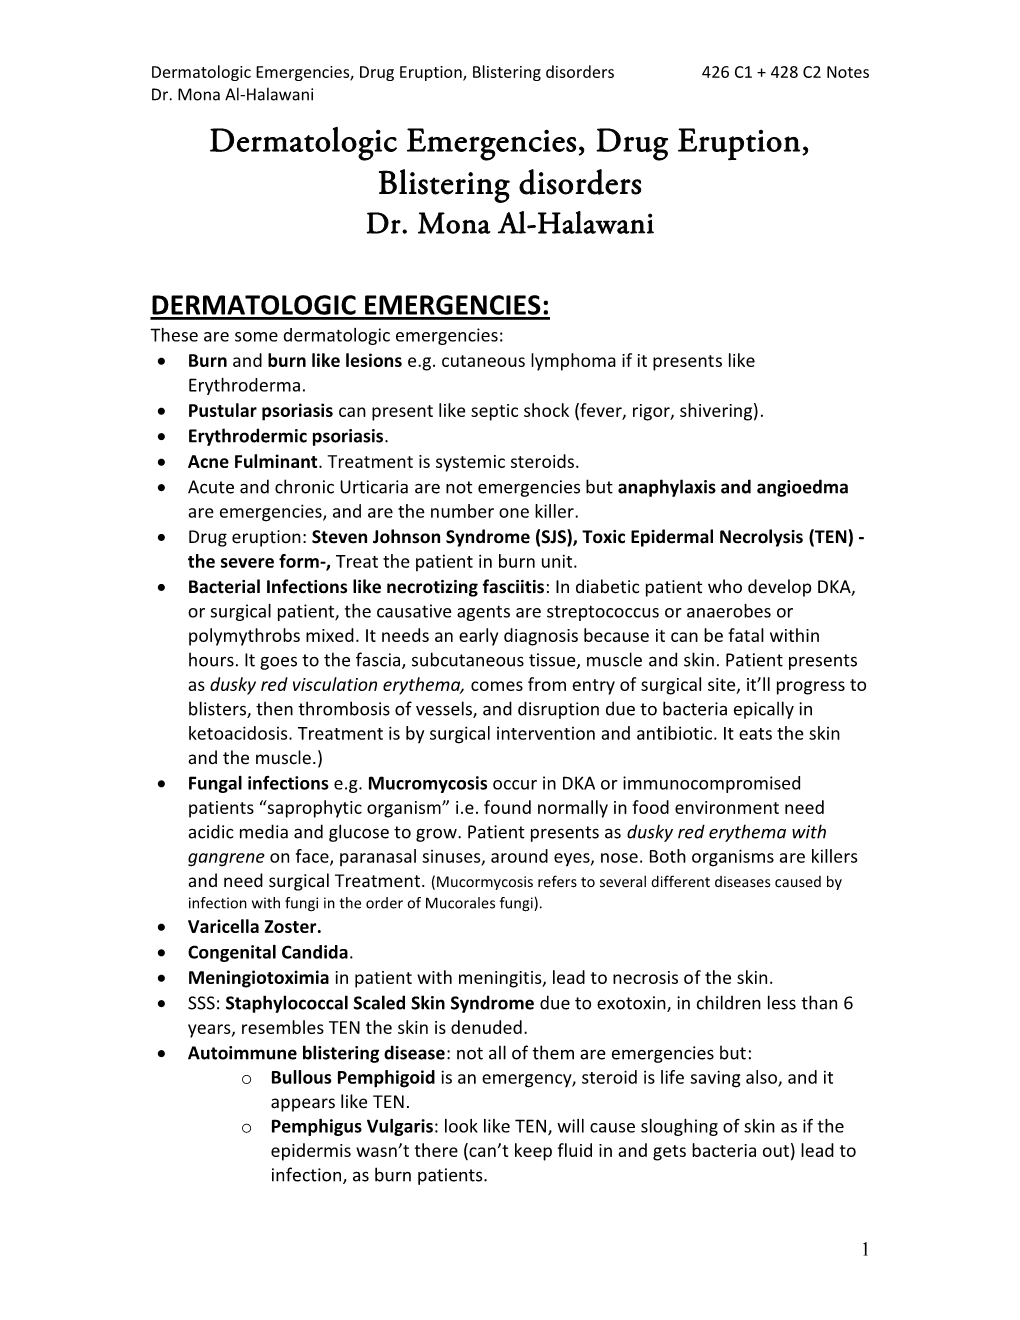 Dermatologic Emergencies, Drug Eruption, Blistering Disorders 426 C1 + 428 C2 Notes Dr